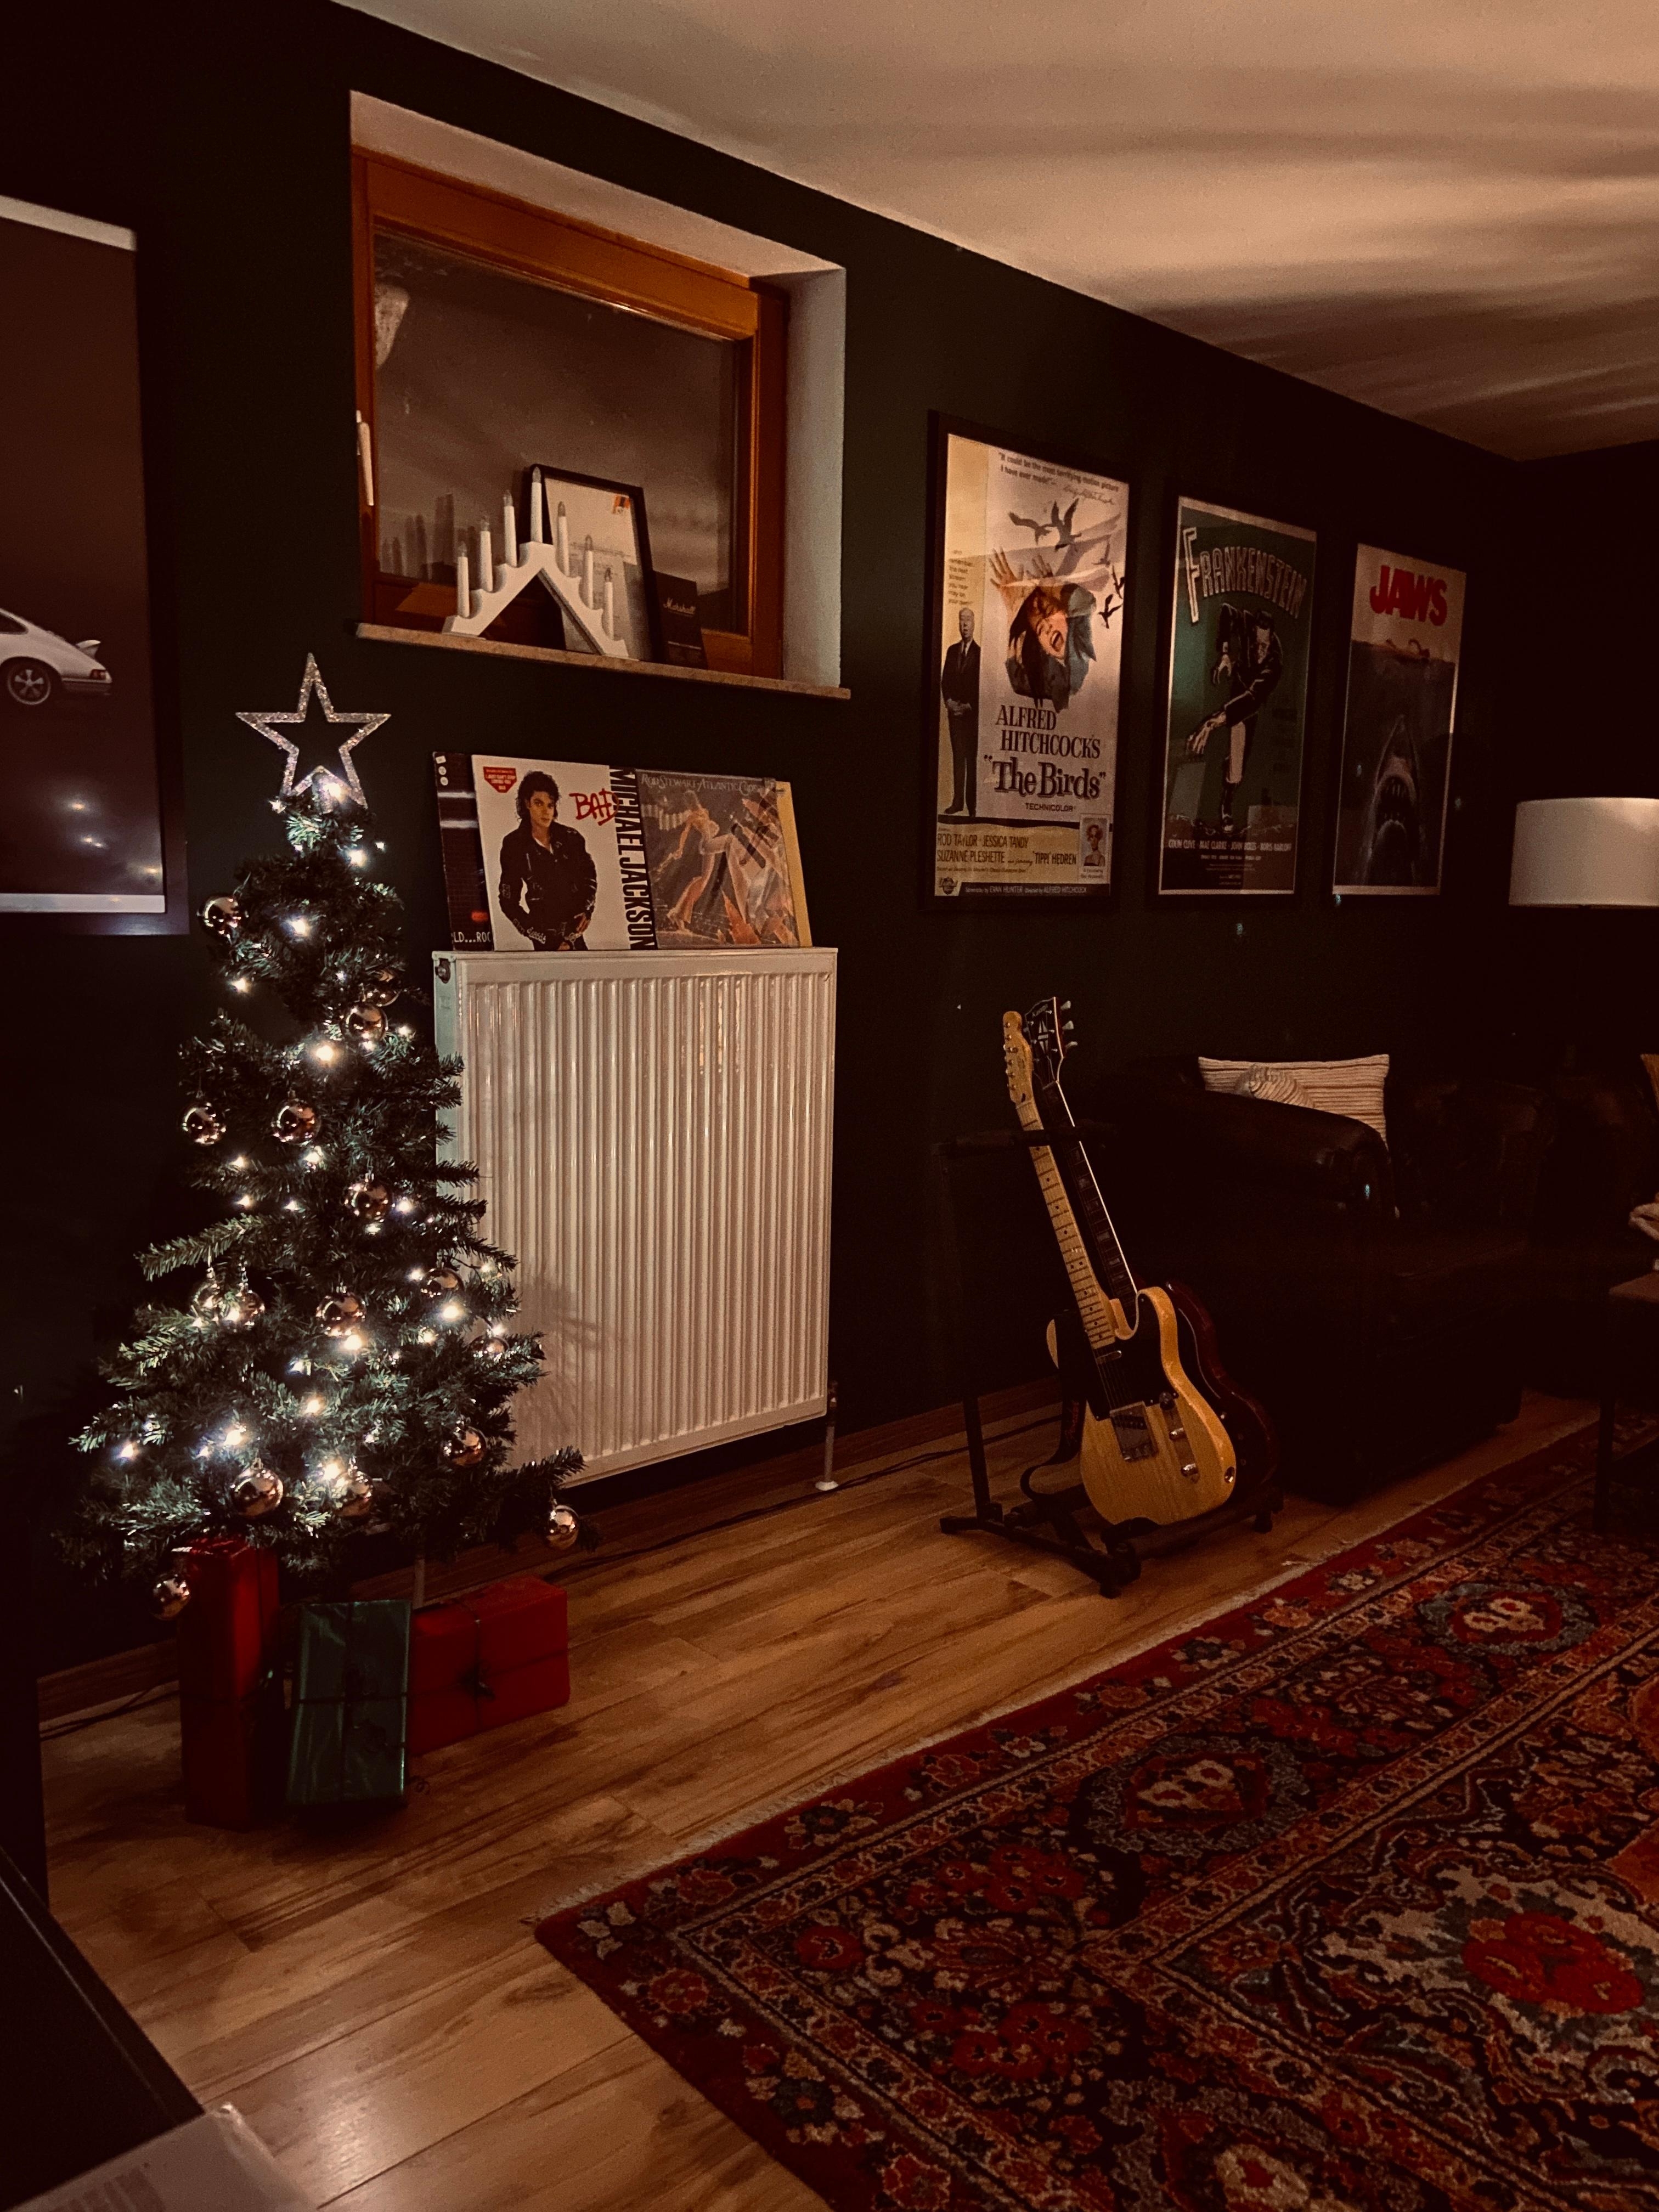 Merry Christmas aus dem Männerzimmer 🎄
#männerzimmer#christmas#heimkino#midcentury#mancave#ohtannenbaum#plattensammlung